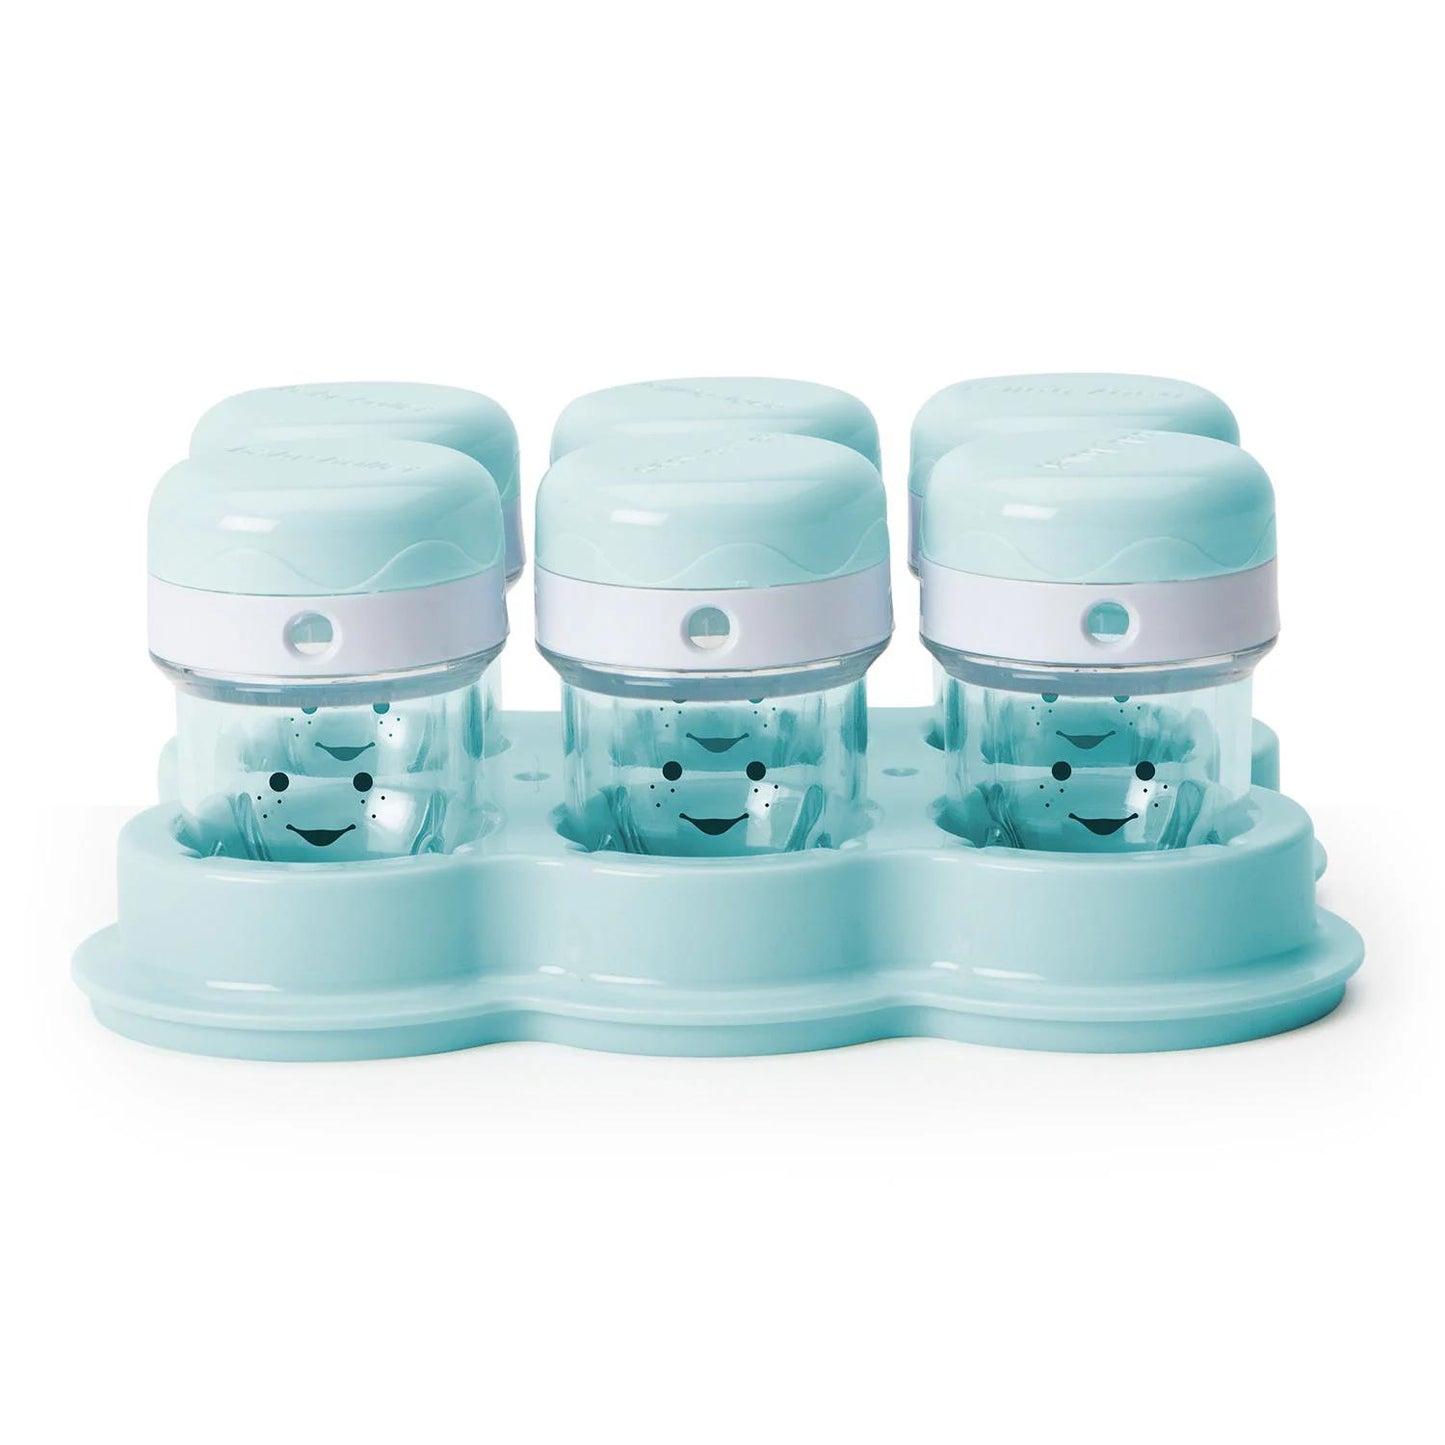 Nutribullet 18-piece Baby Food Prep System Blender